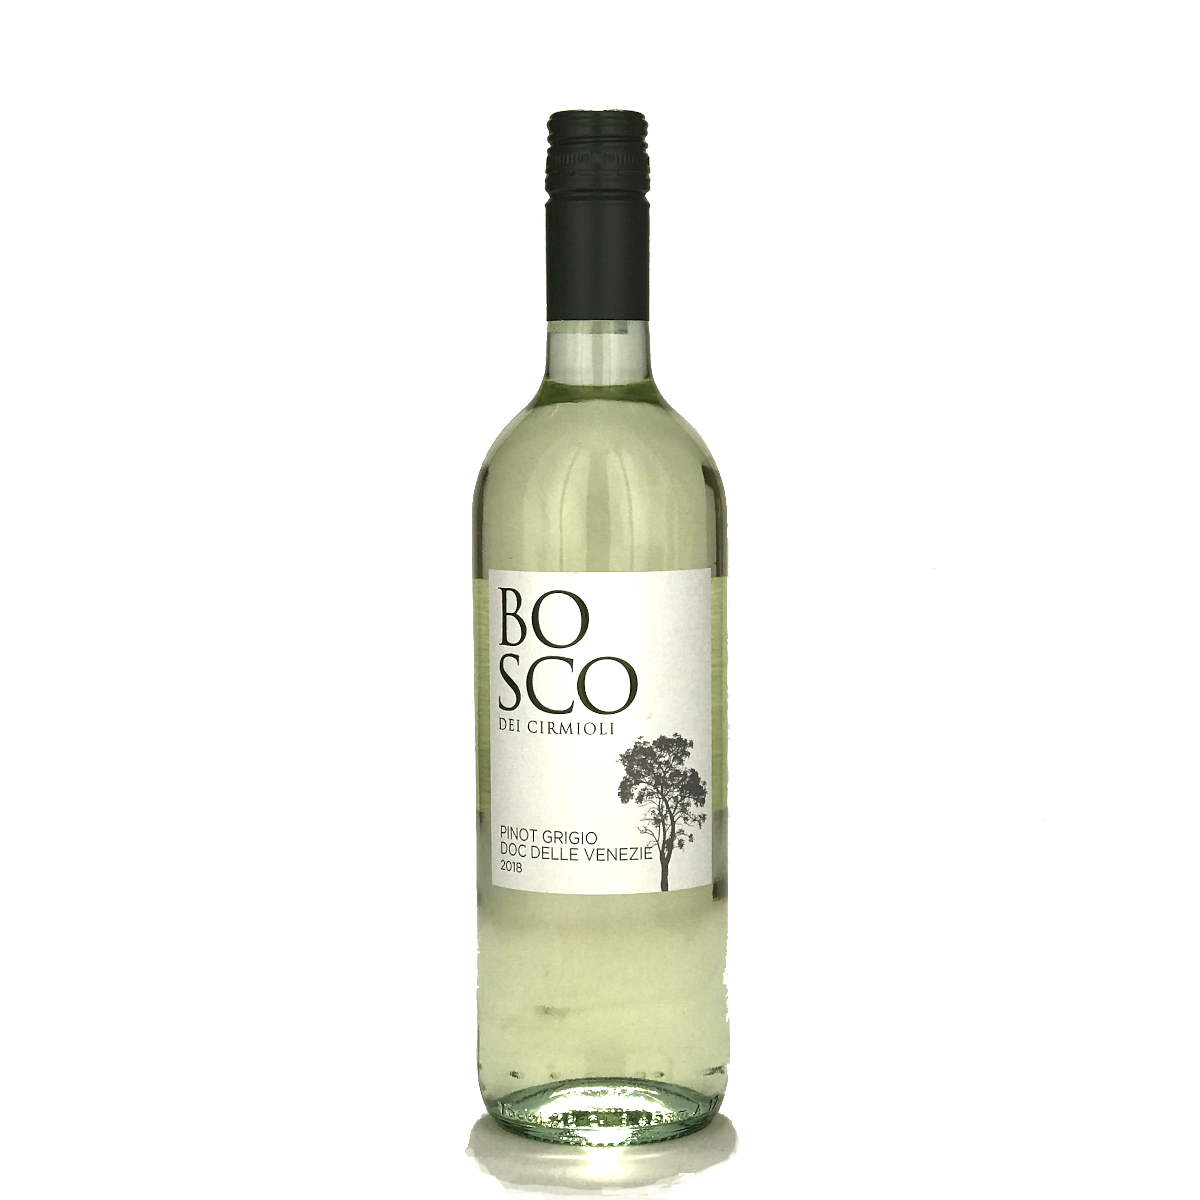 Pinot Grigio 'Bosco dei Cirmioli' DOC 2020 - Bosco Viticultori